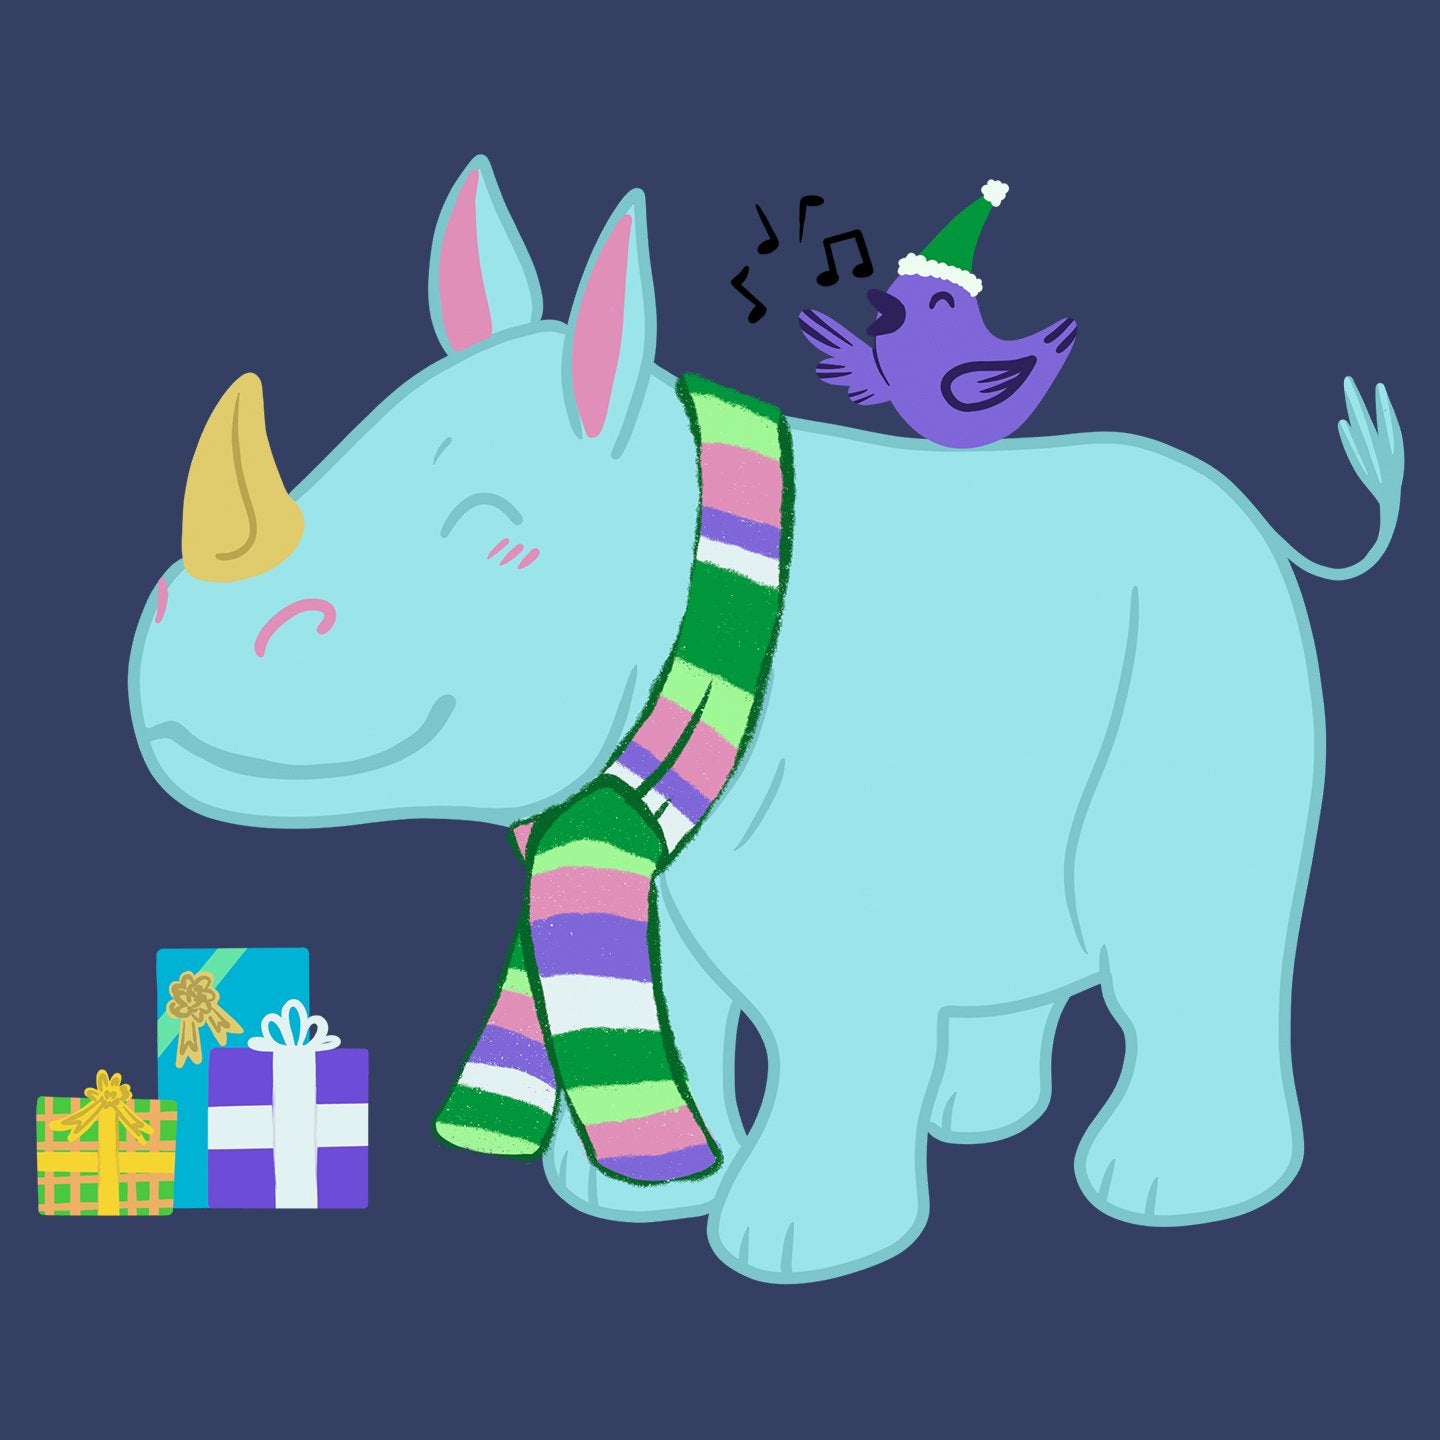 Christmas Rhino - Adult Unisex T-Shirt